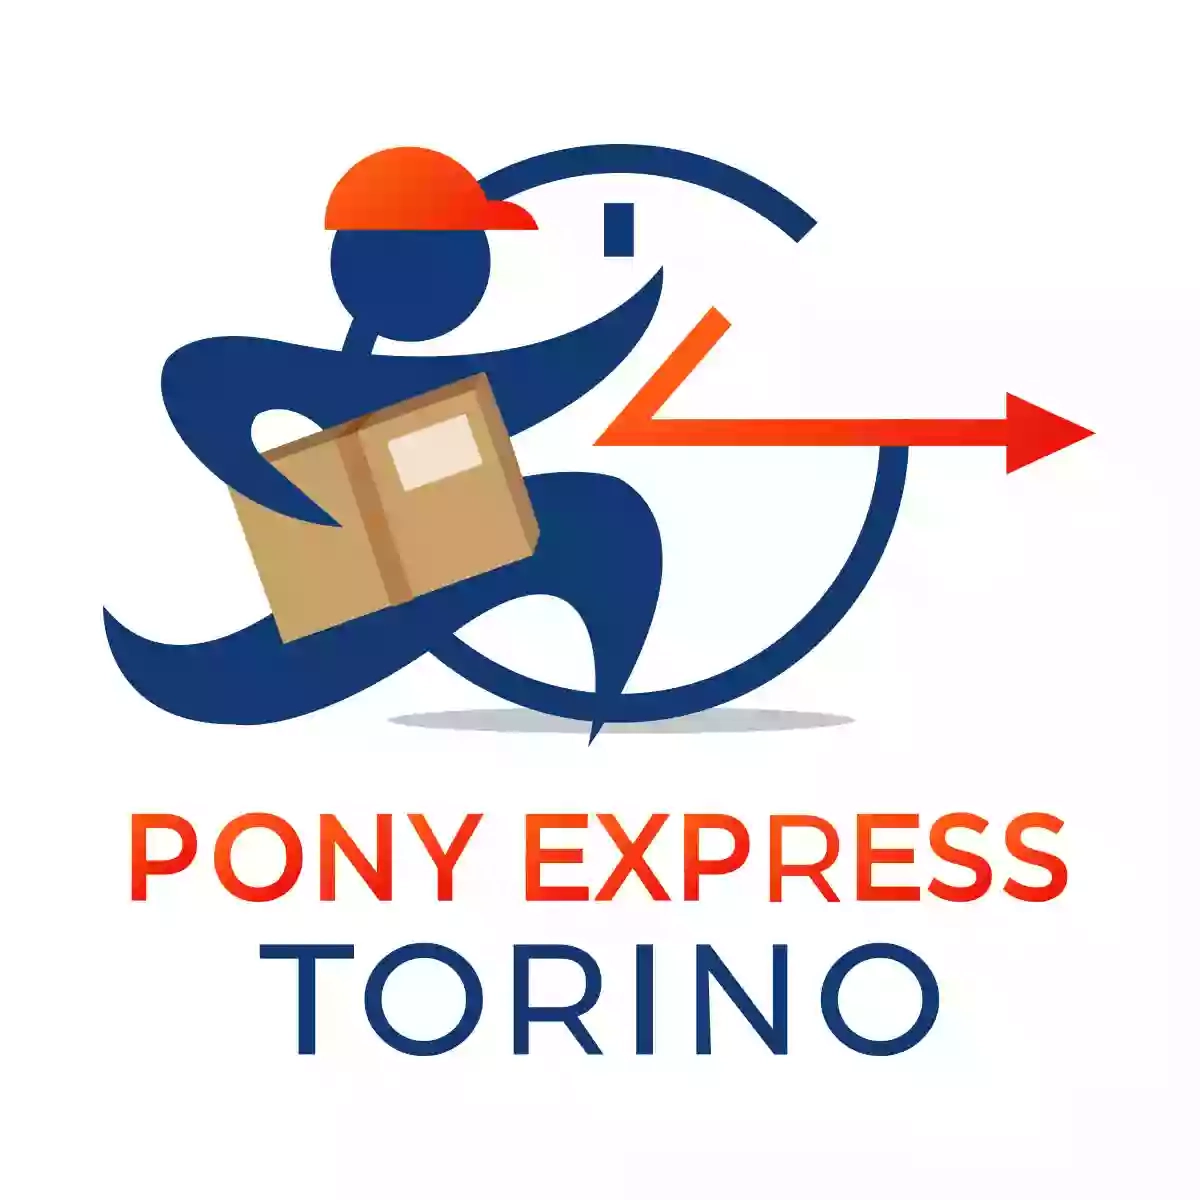 Pony Express Torino - Consegne Rapide al Miglior Prezzo